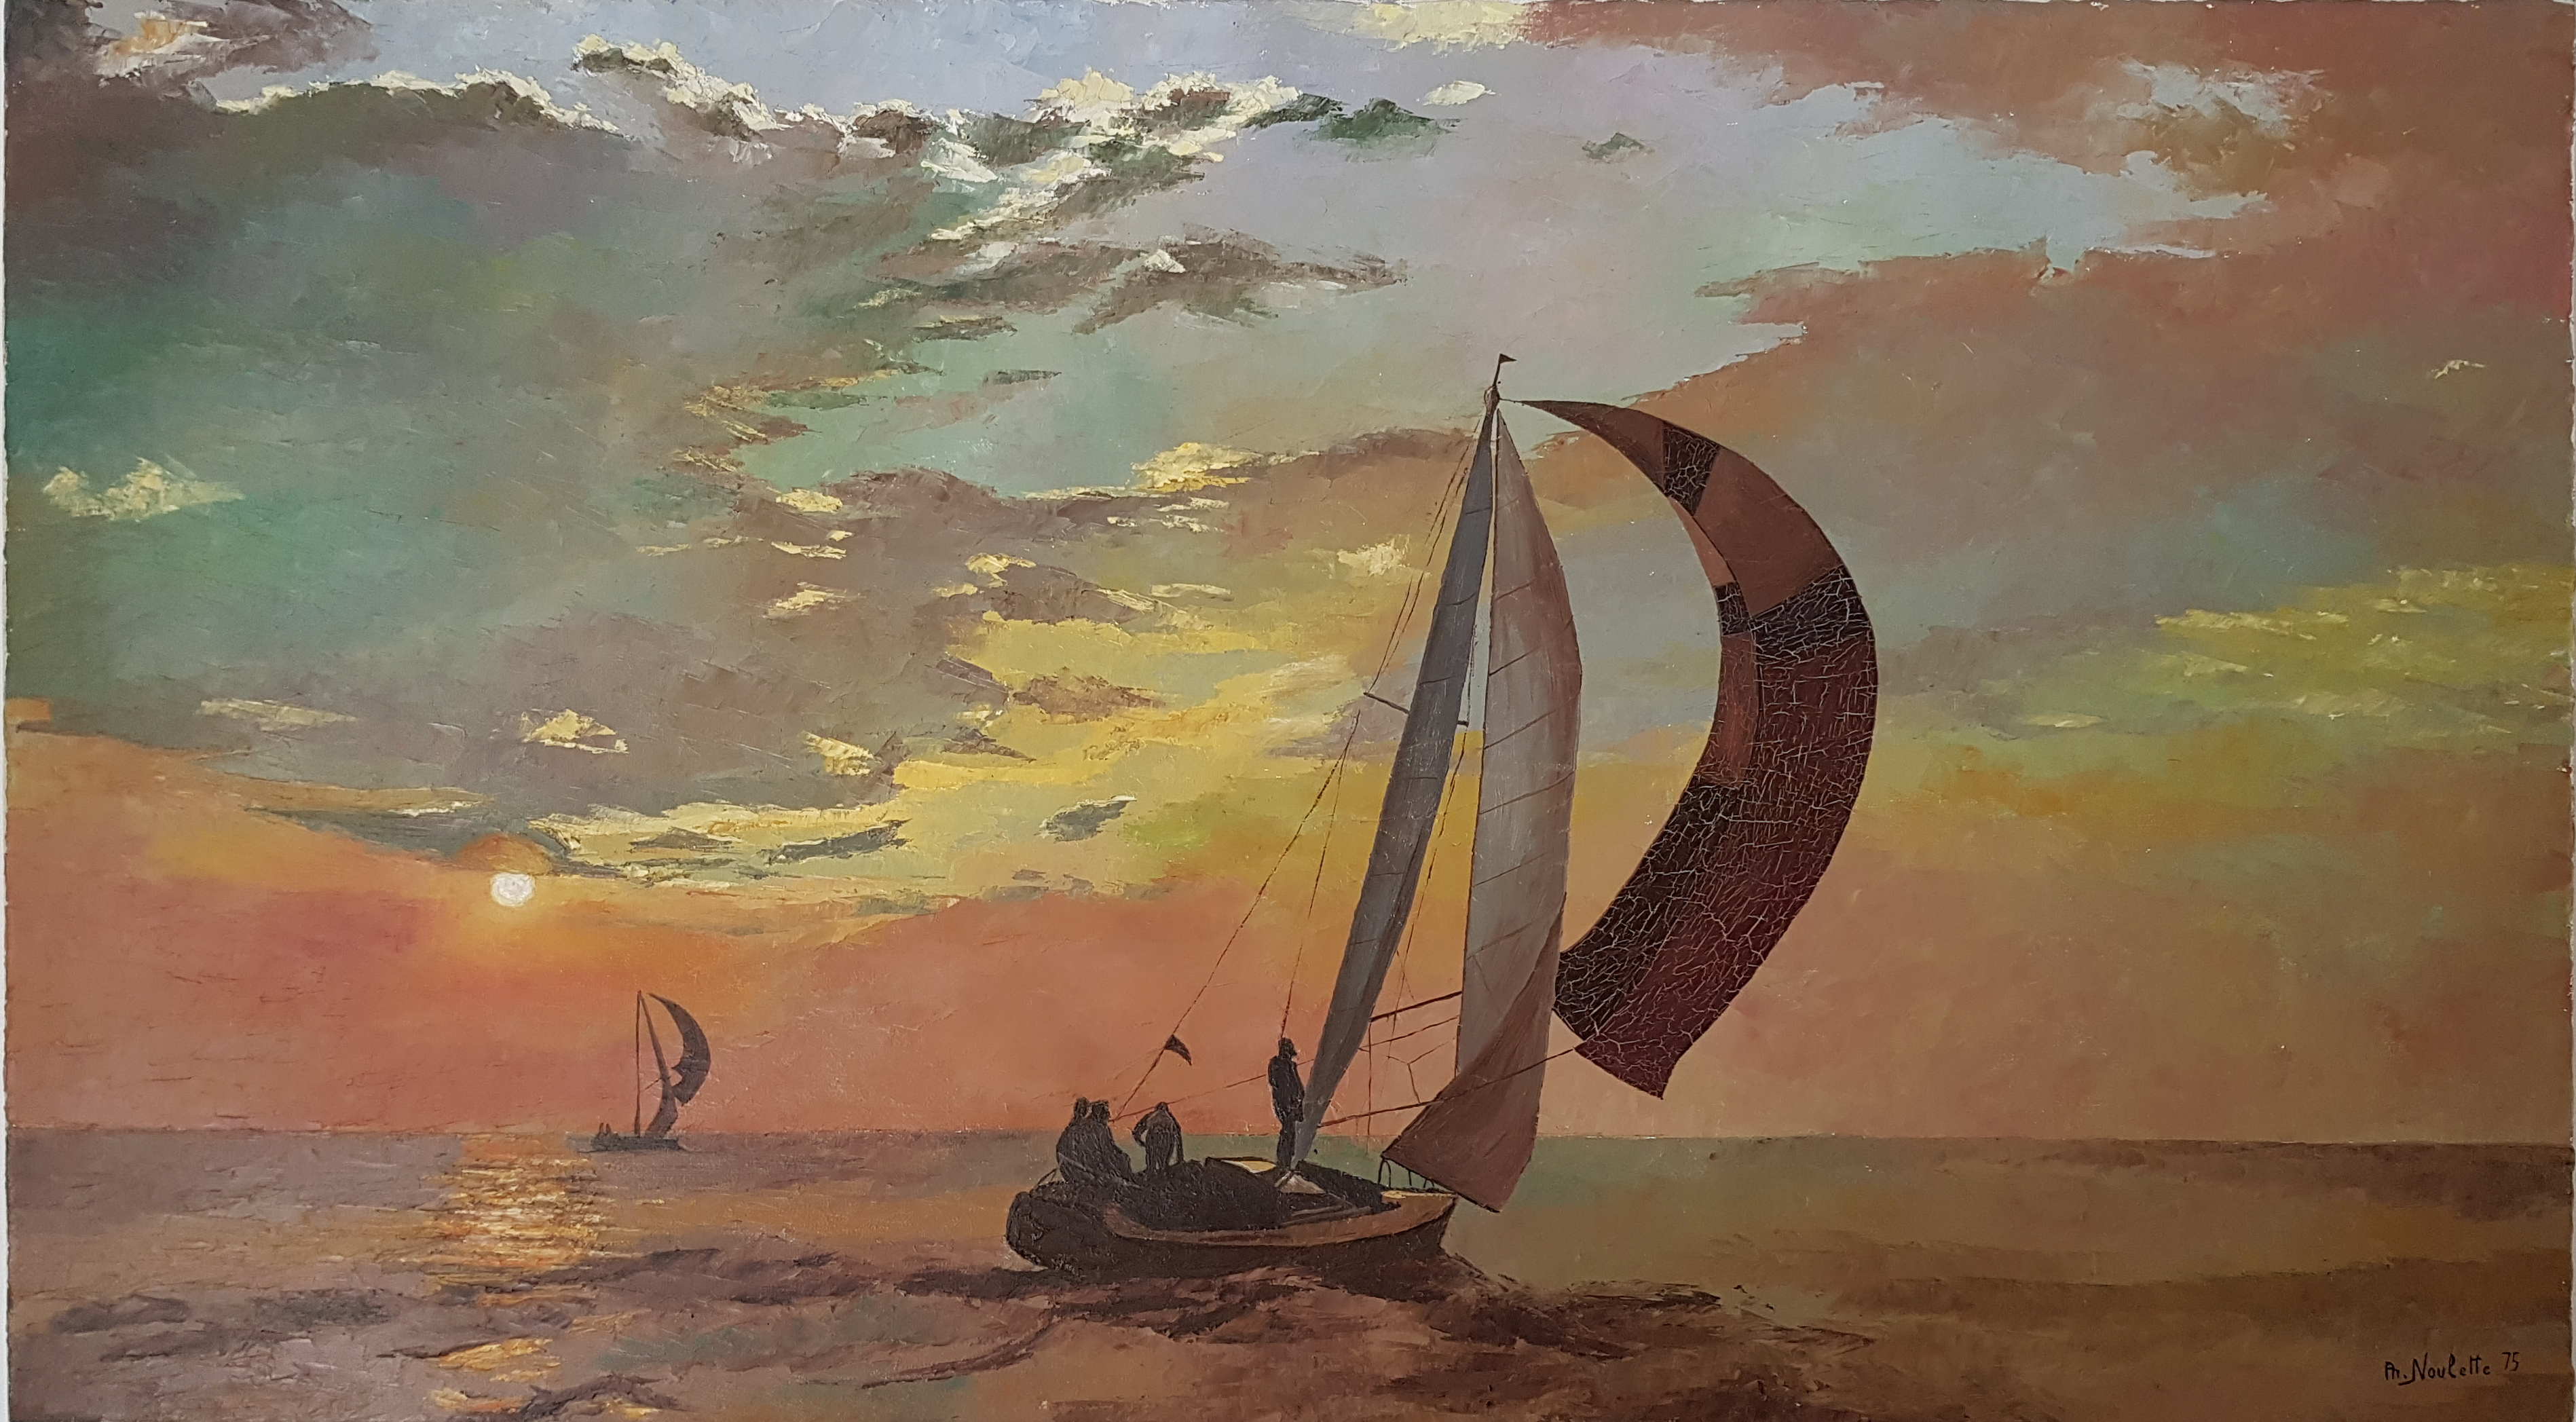 Coucher de Soleil, 1975, huile sur toile/chassis, 70 x 124 cm. Cette peinture sans prétention, réalisée innocemment à l